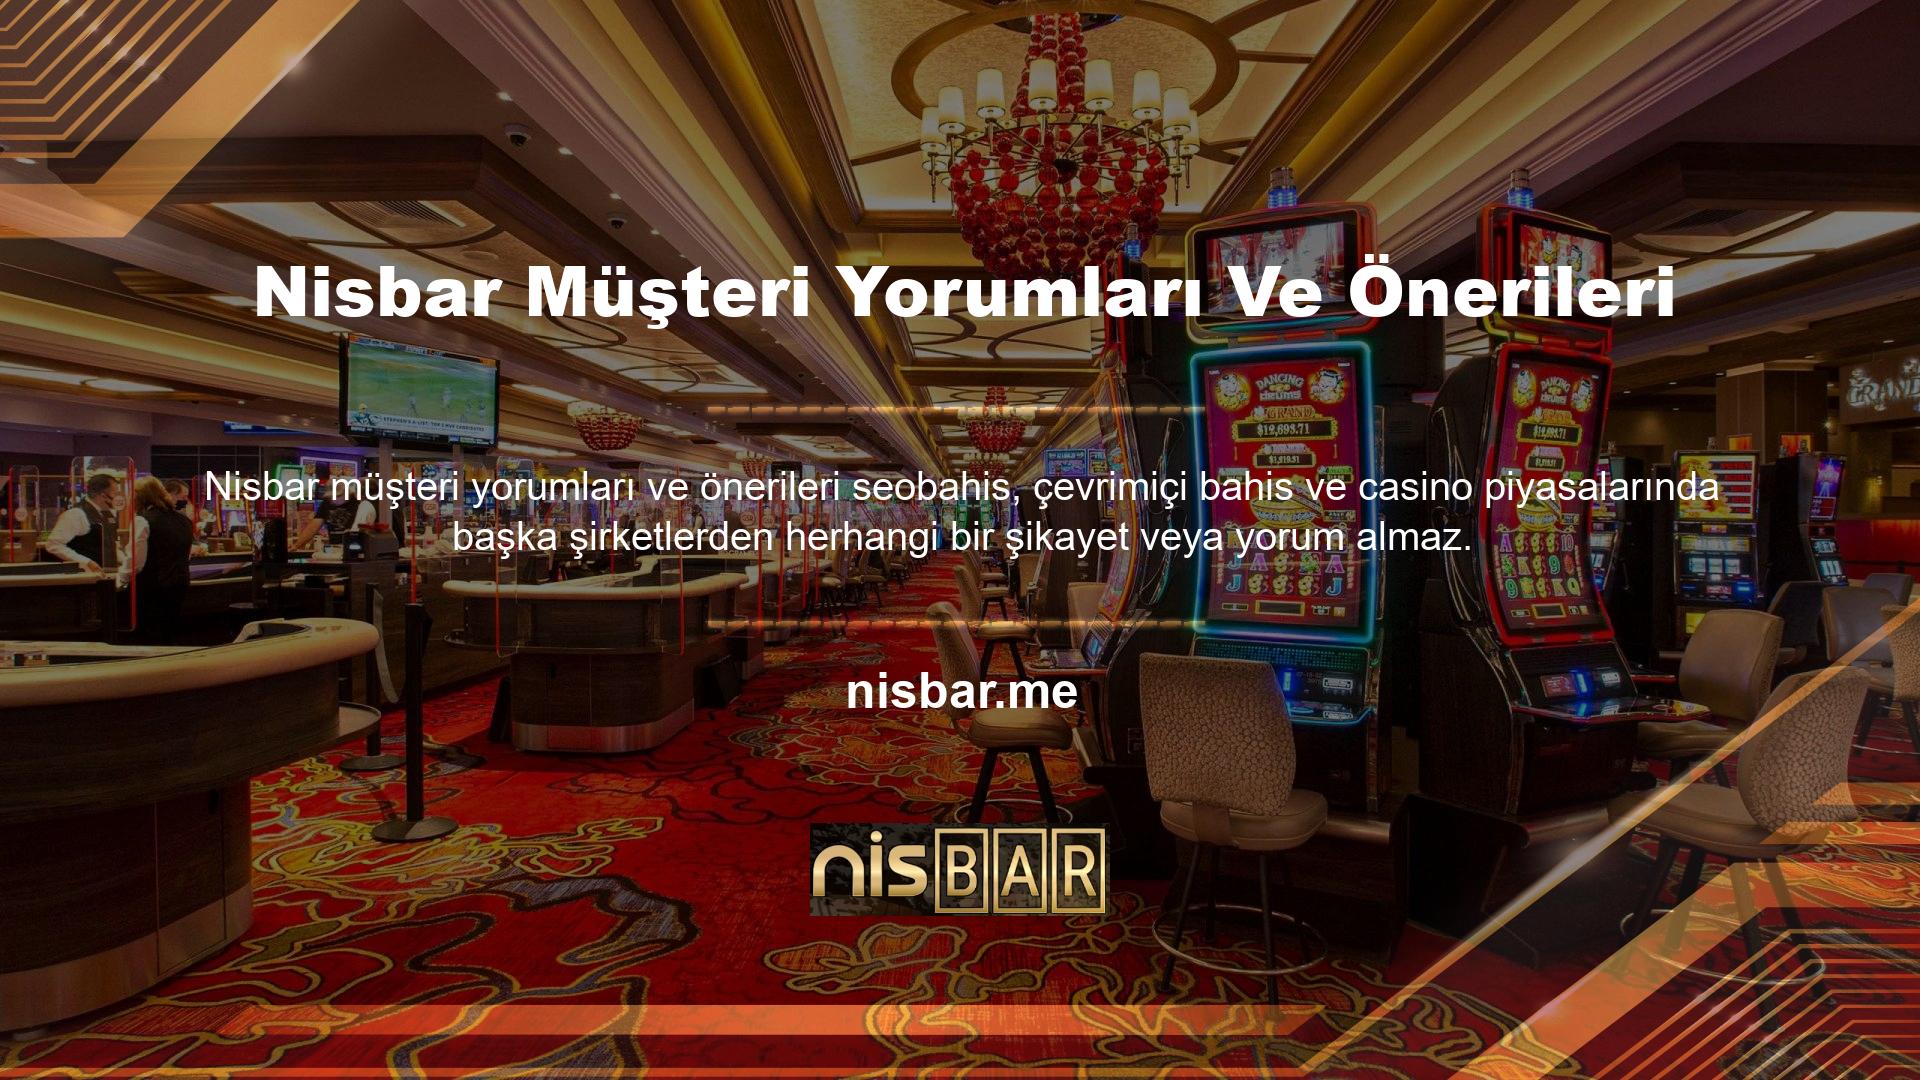 Bazı şirketler, gizlice faaliyet gösteren korsan casino siteleridir